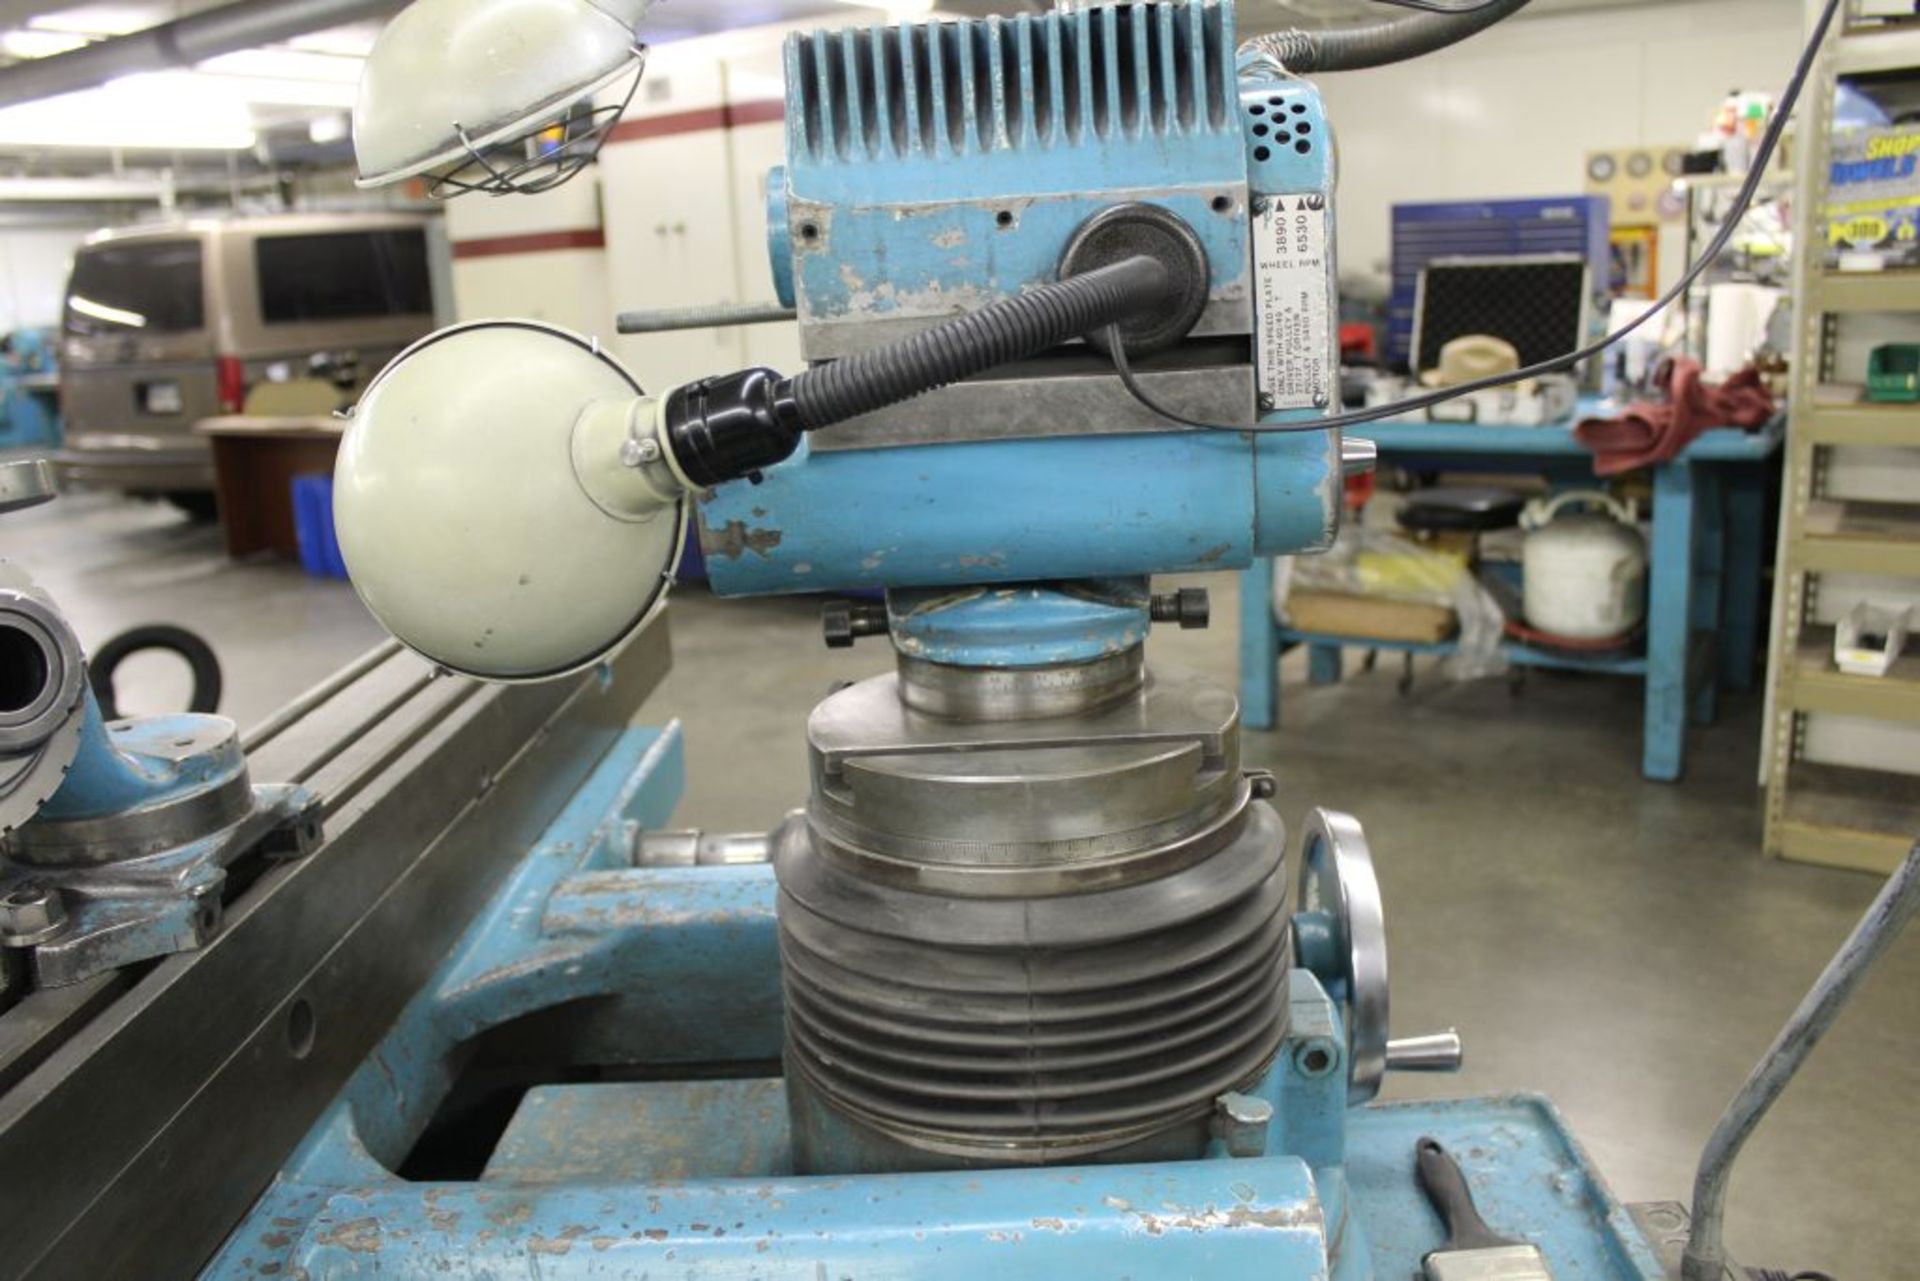 1974 Cincinnati model 2 tool & cutter grinder, sn 31512T74-0002, has 2 axis 360 degree grinding - Image 5 of 18